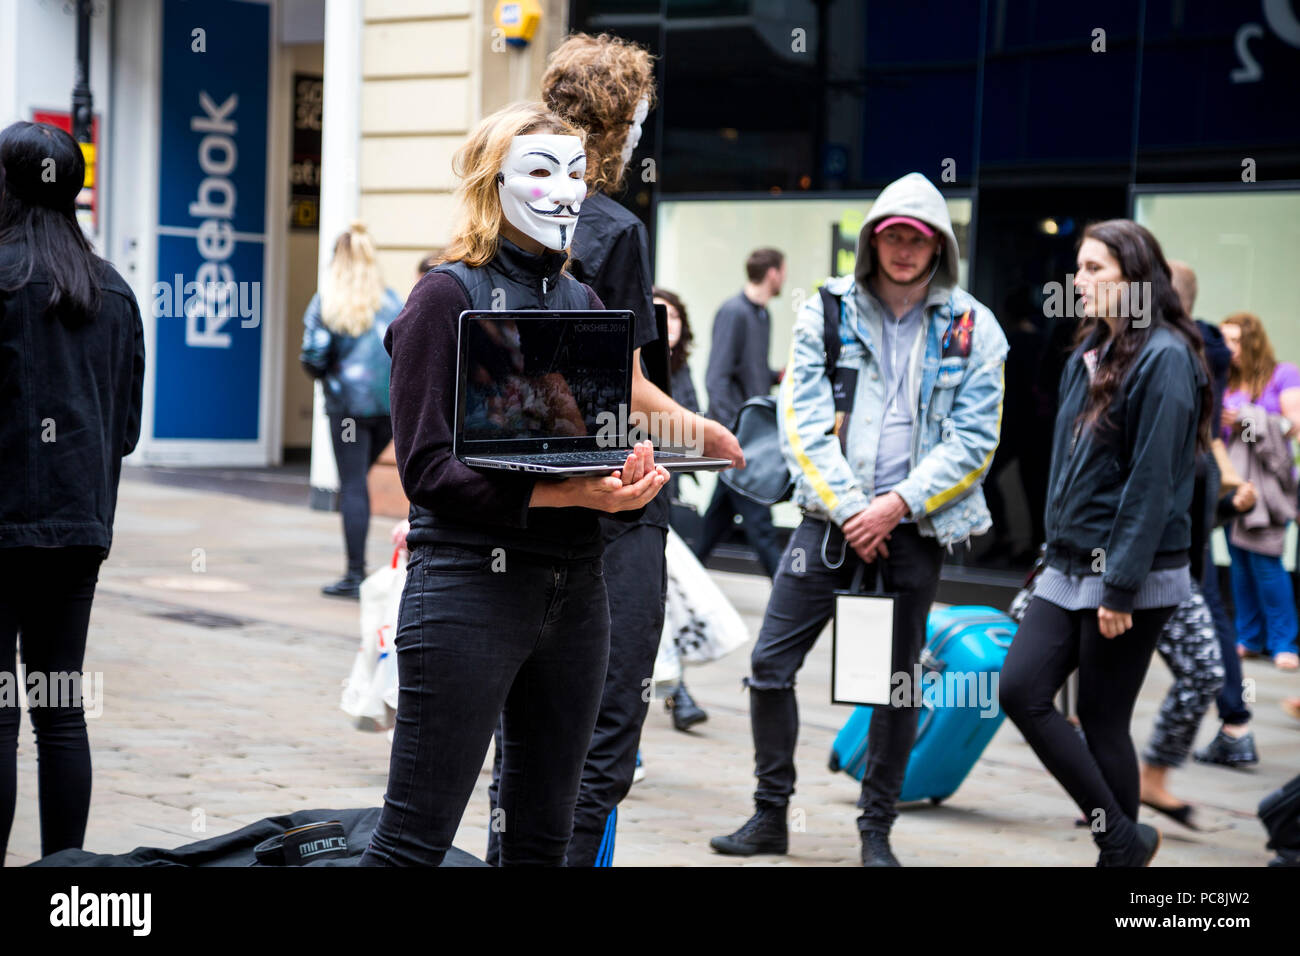 2 juin 2018 Manchester, UK - anonyme portant des masques qui protestent contre la cruauté envers les animaux dans l'industrie alimentaire Banque D'Images